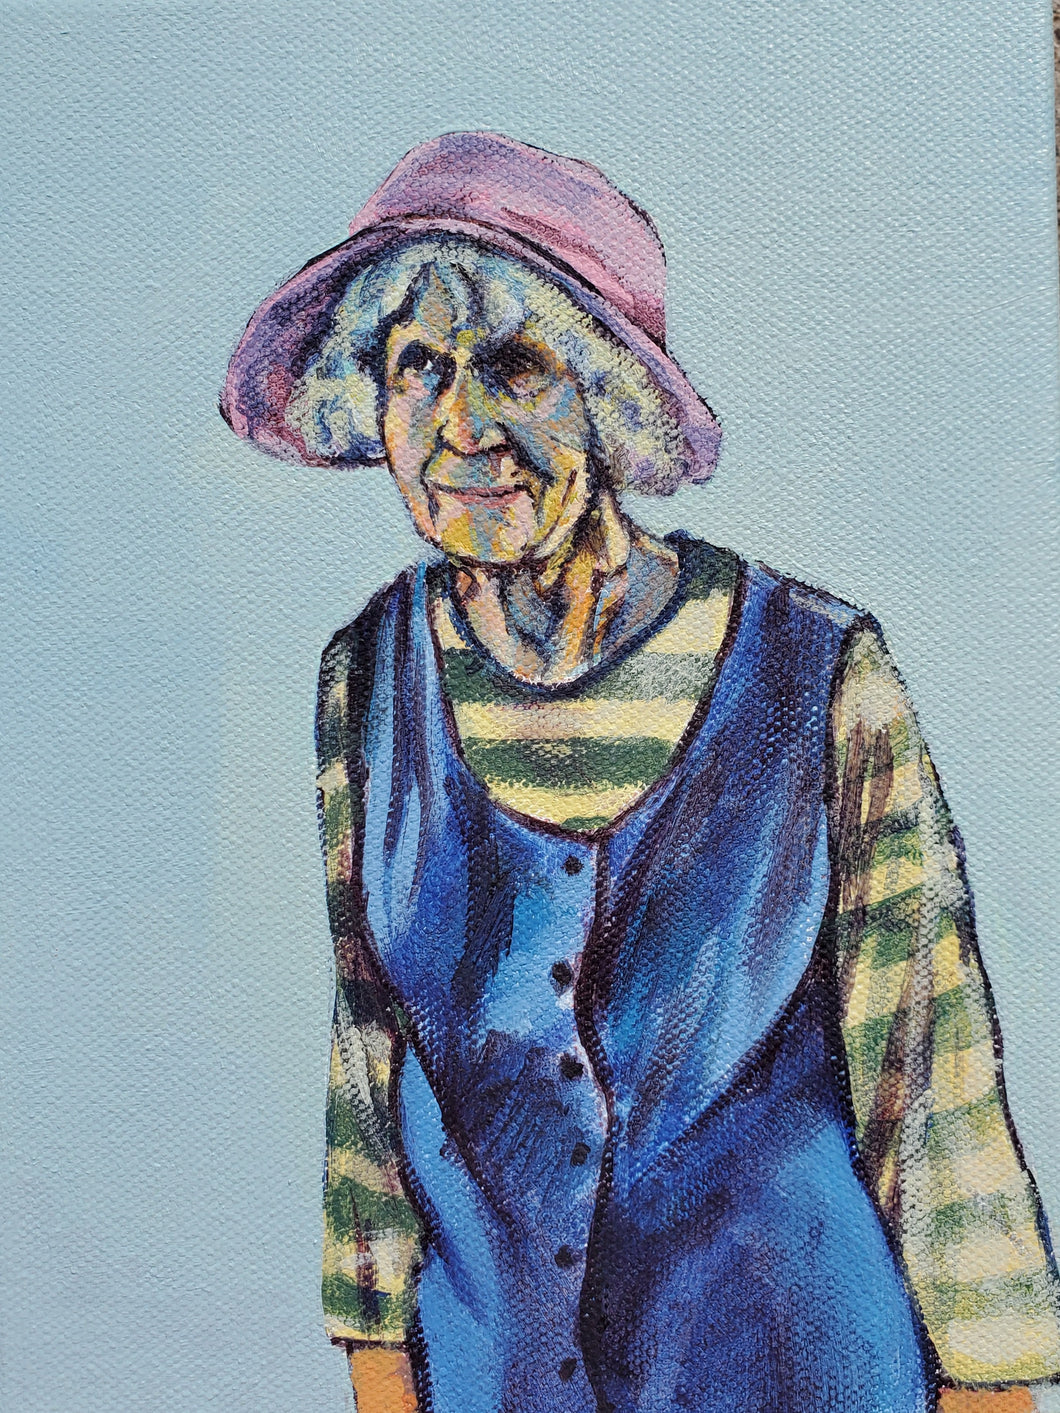 sarah maynard - “lady in pink hat” (6 x 8”)